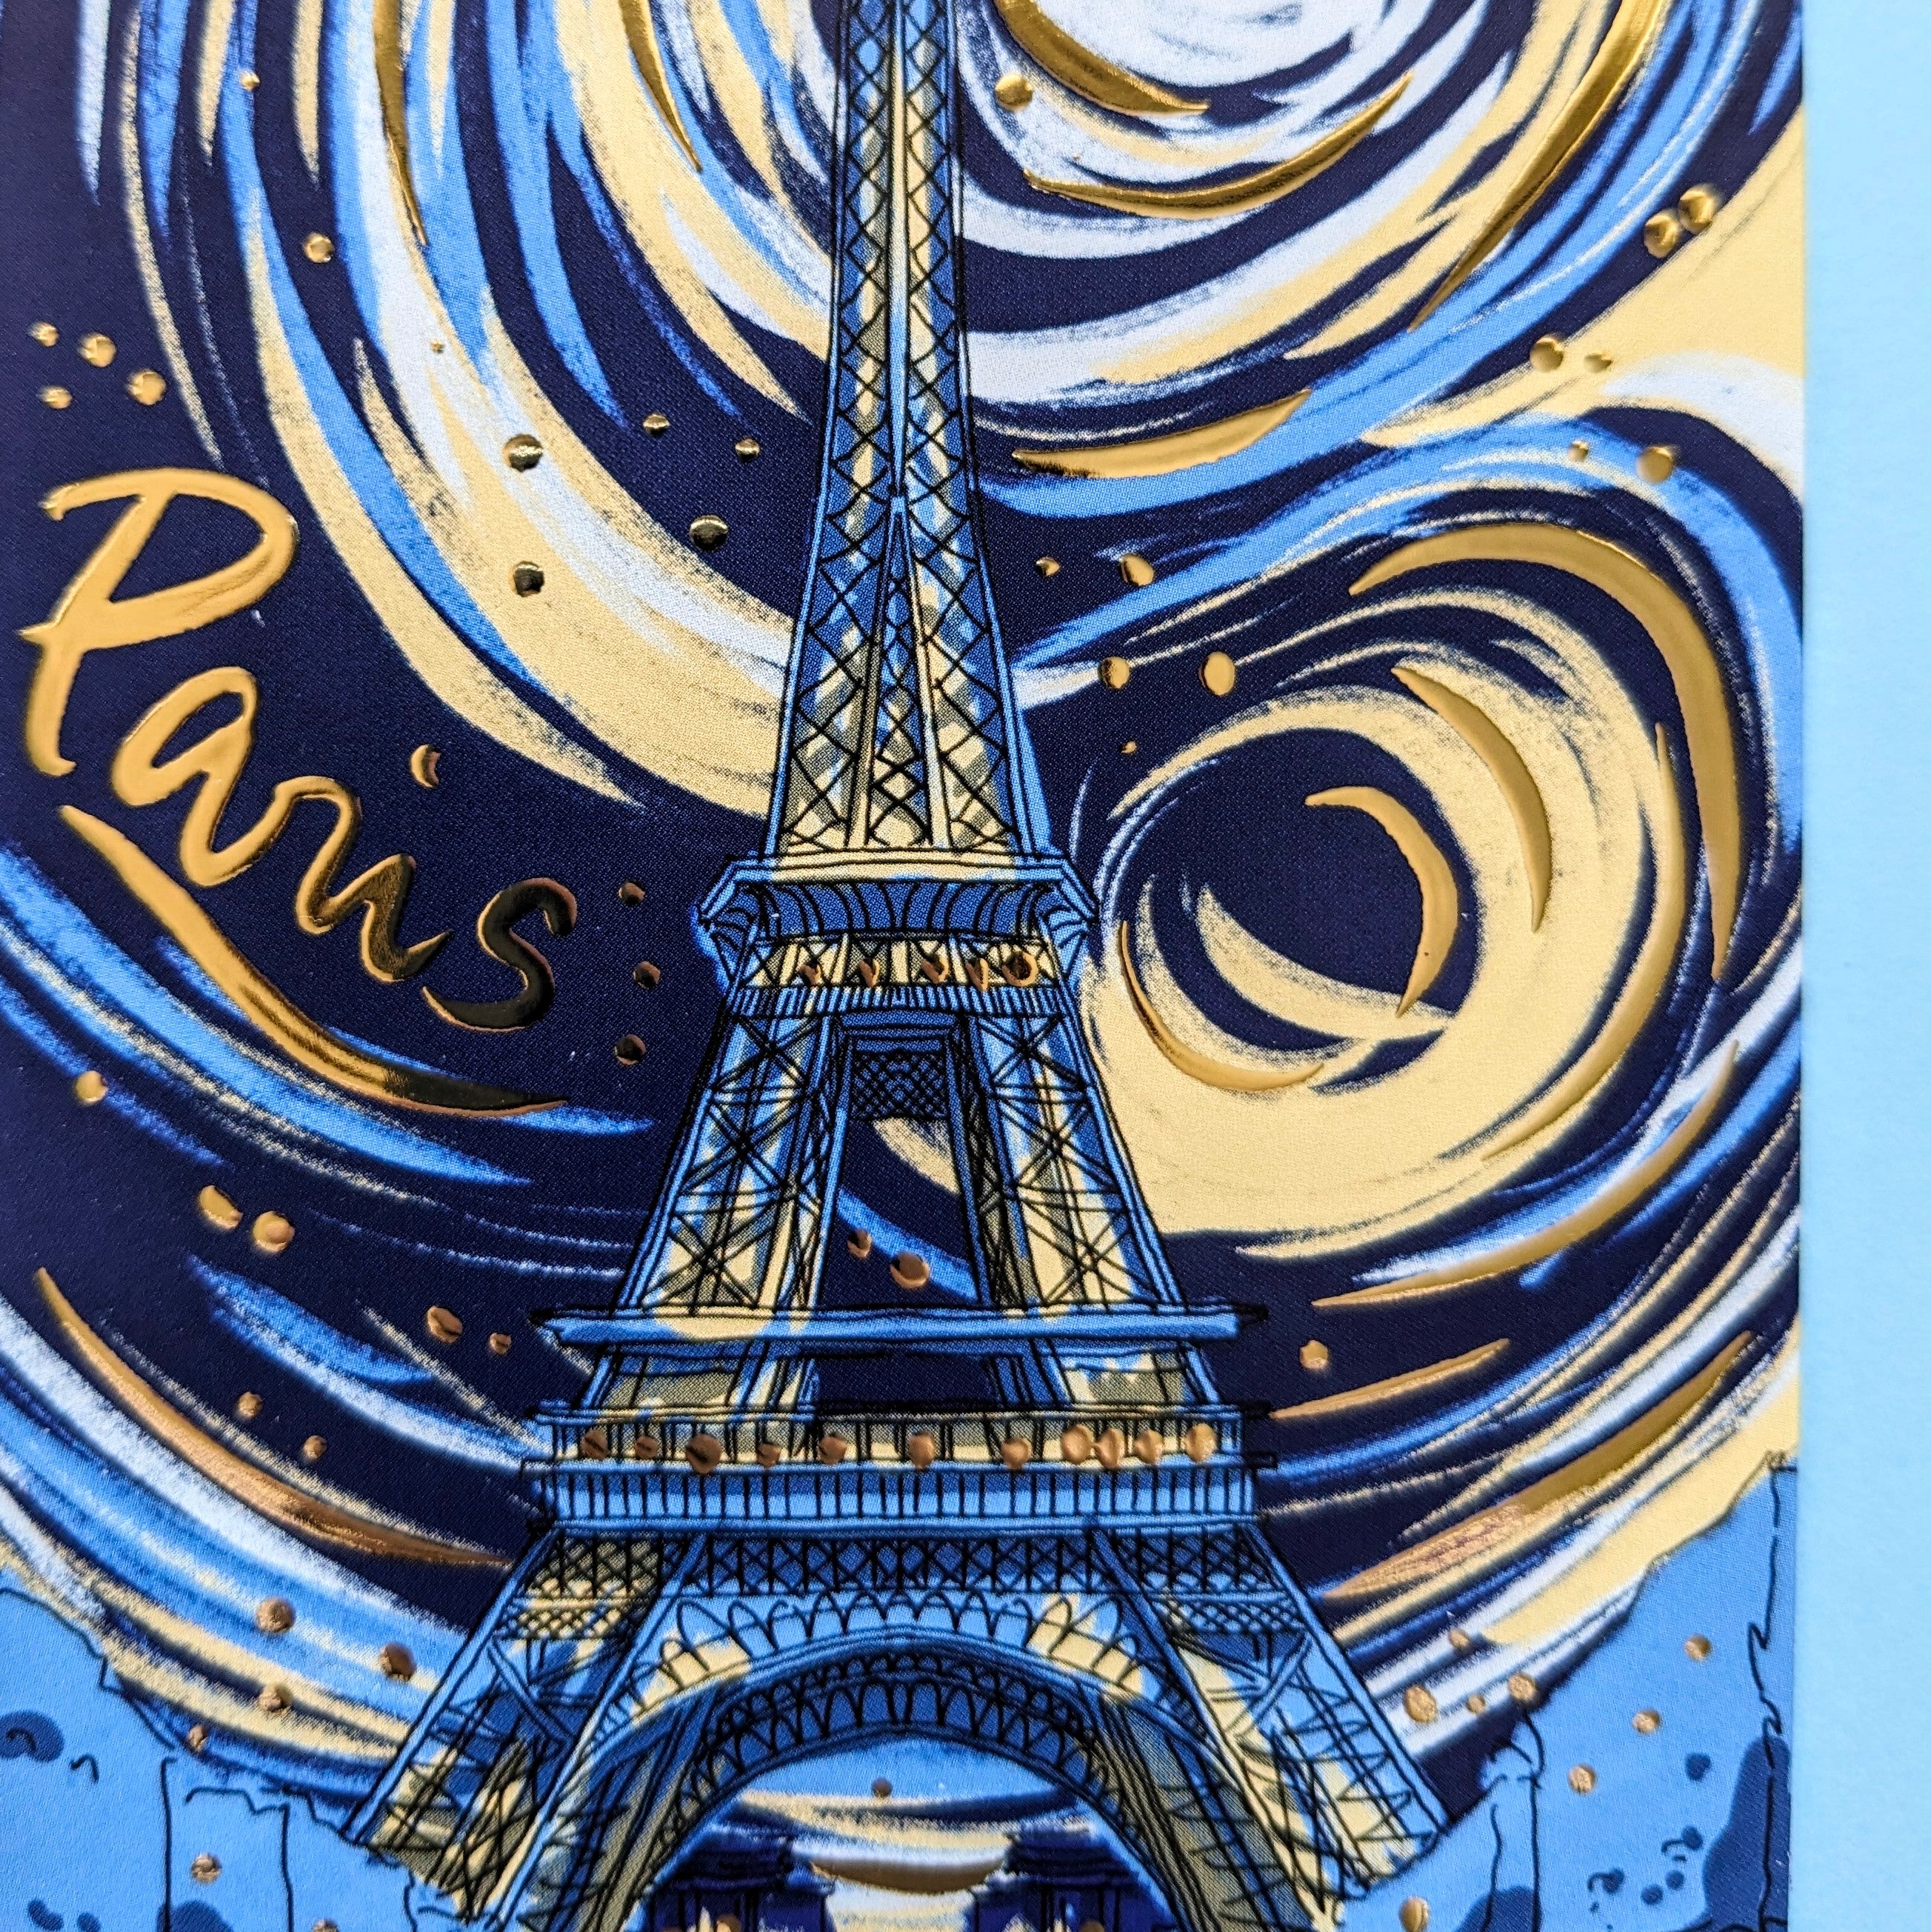 Tour Eiffel imaginaire